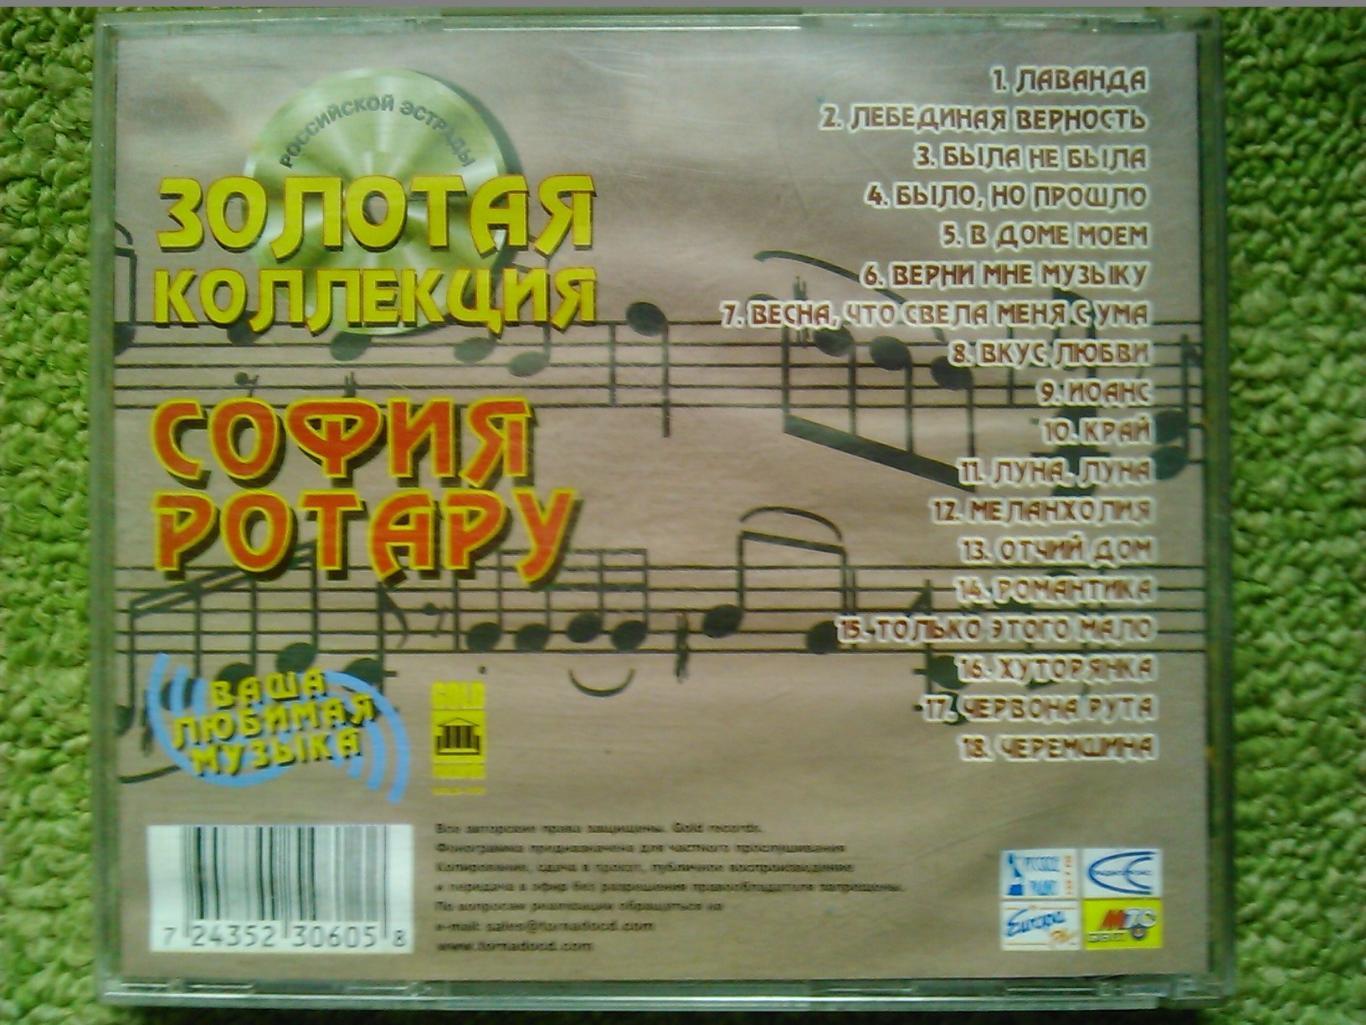 Аудио CD компакт диск София РОТАРУ -Золотая коллекция. Оптом скидки до 47%! 2